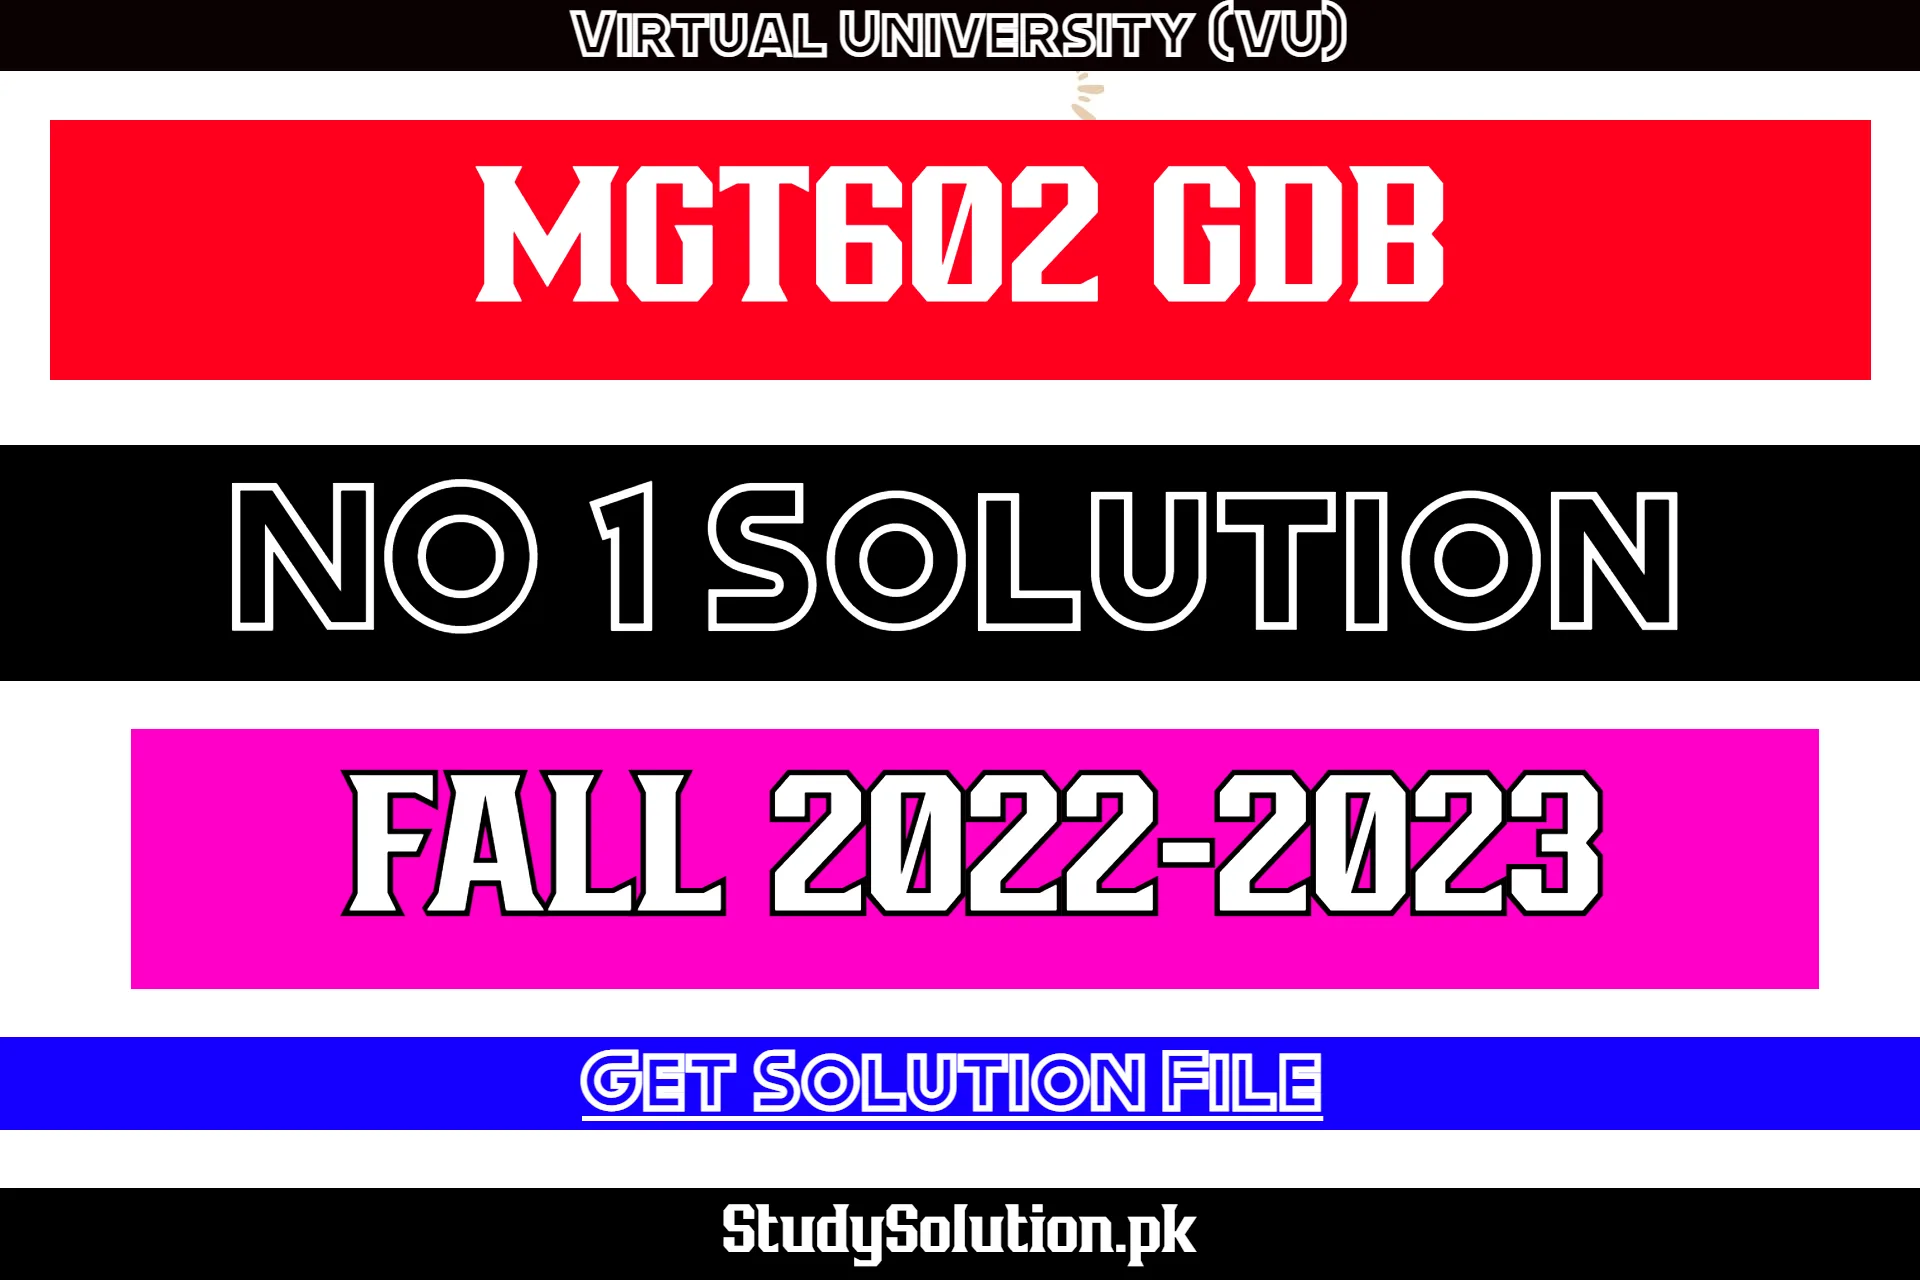 MGT602 GDB No 1 Solution Fall 2022